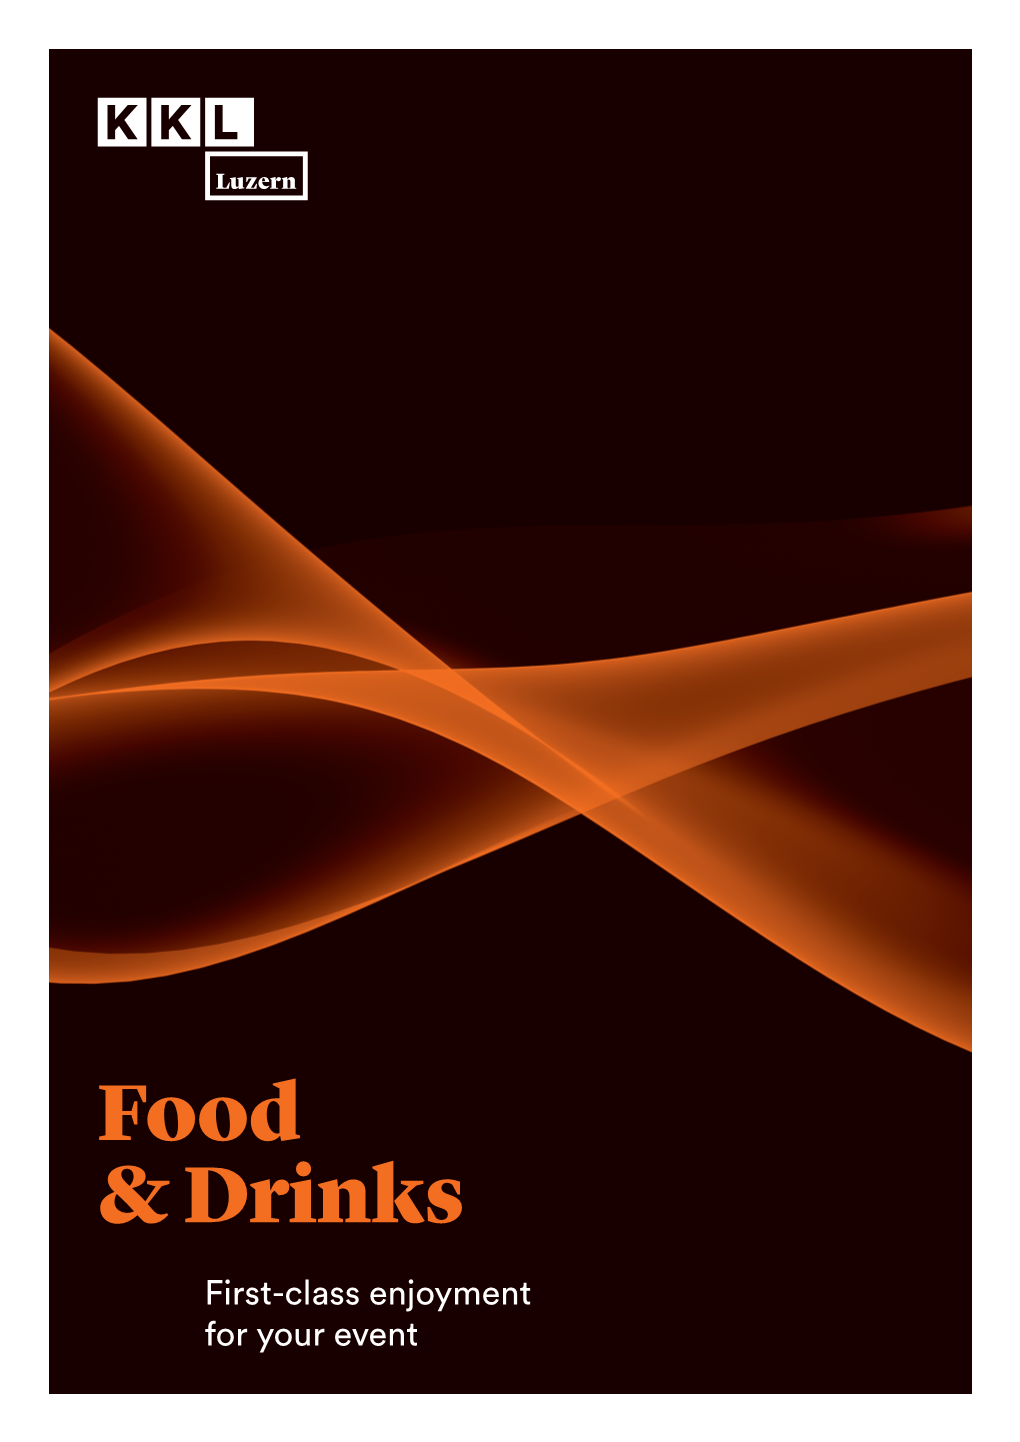 KKL Food & Drinks 2018-2019 E.Indd